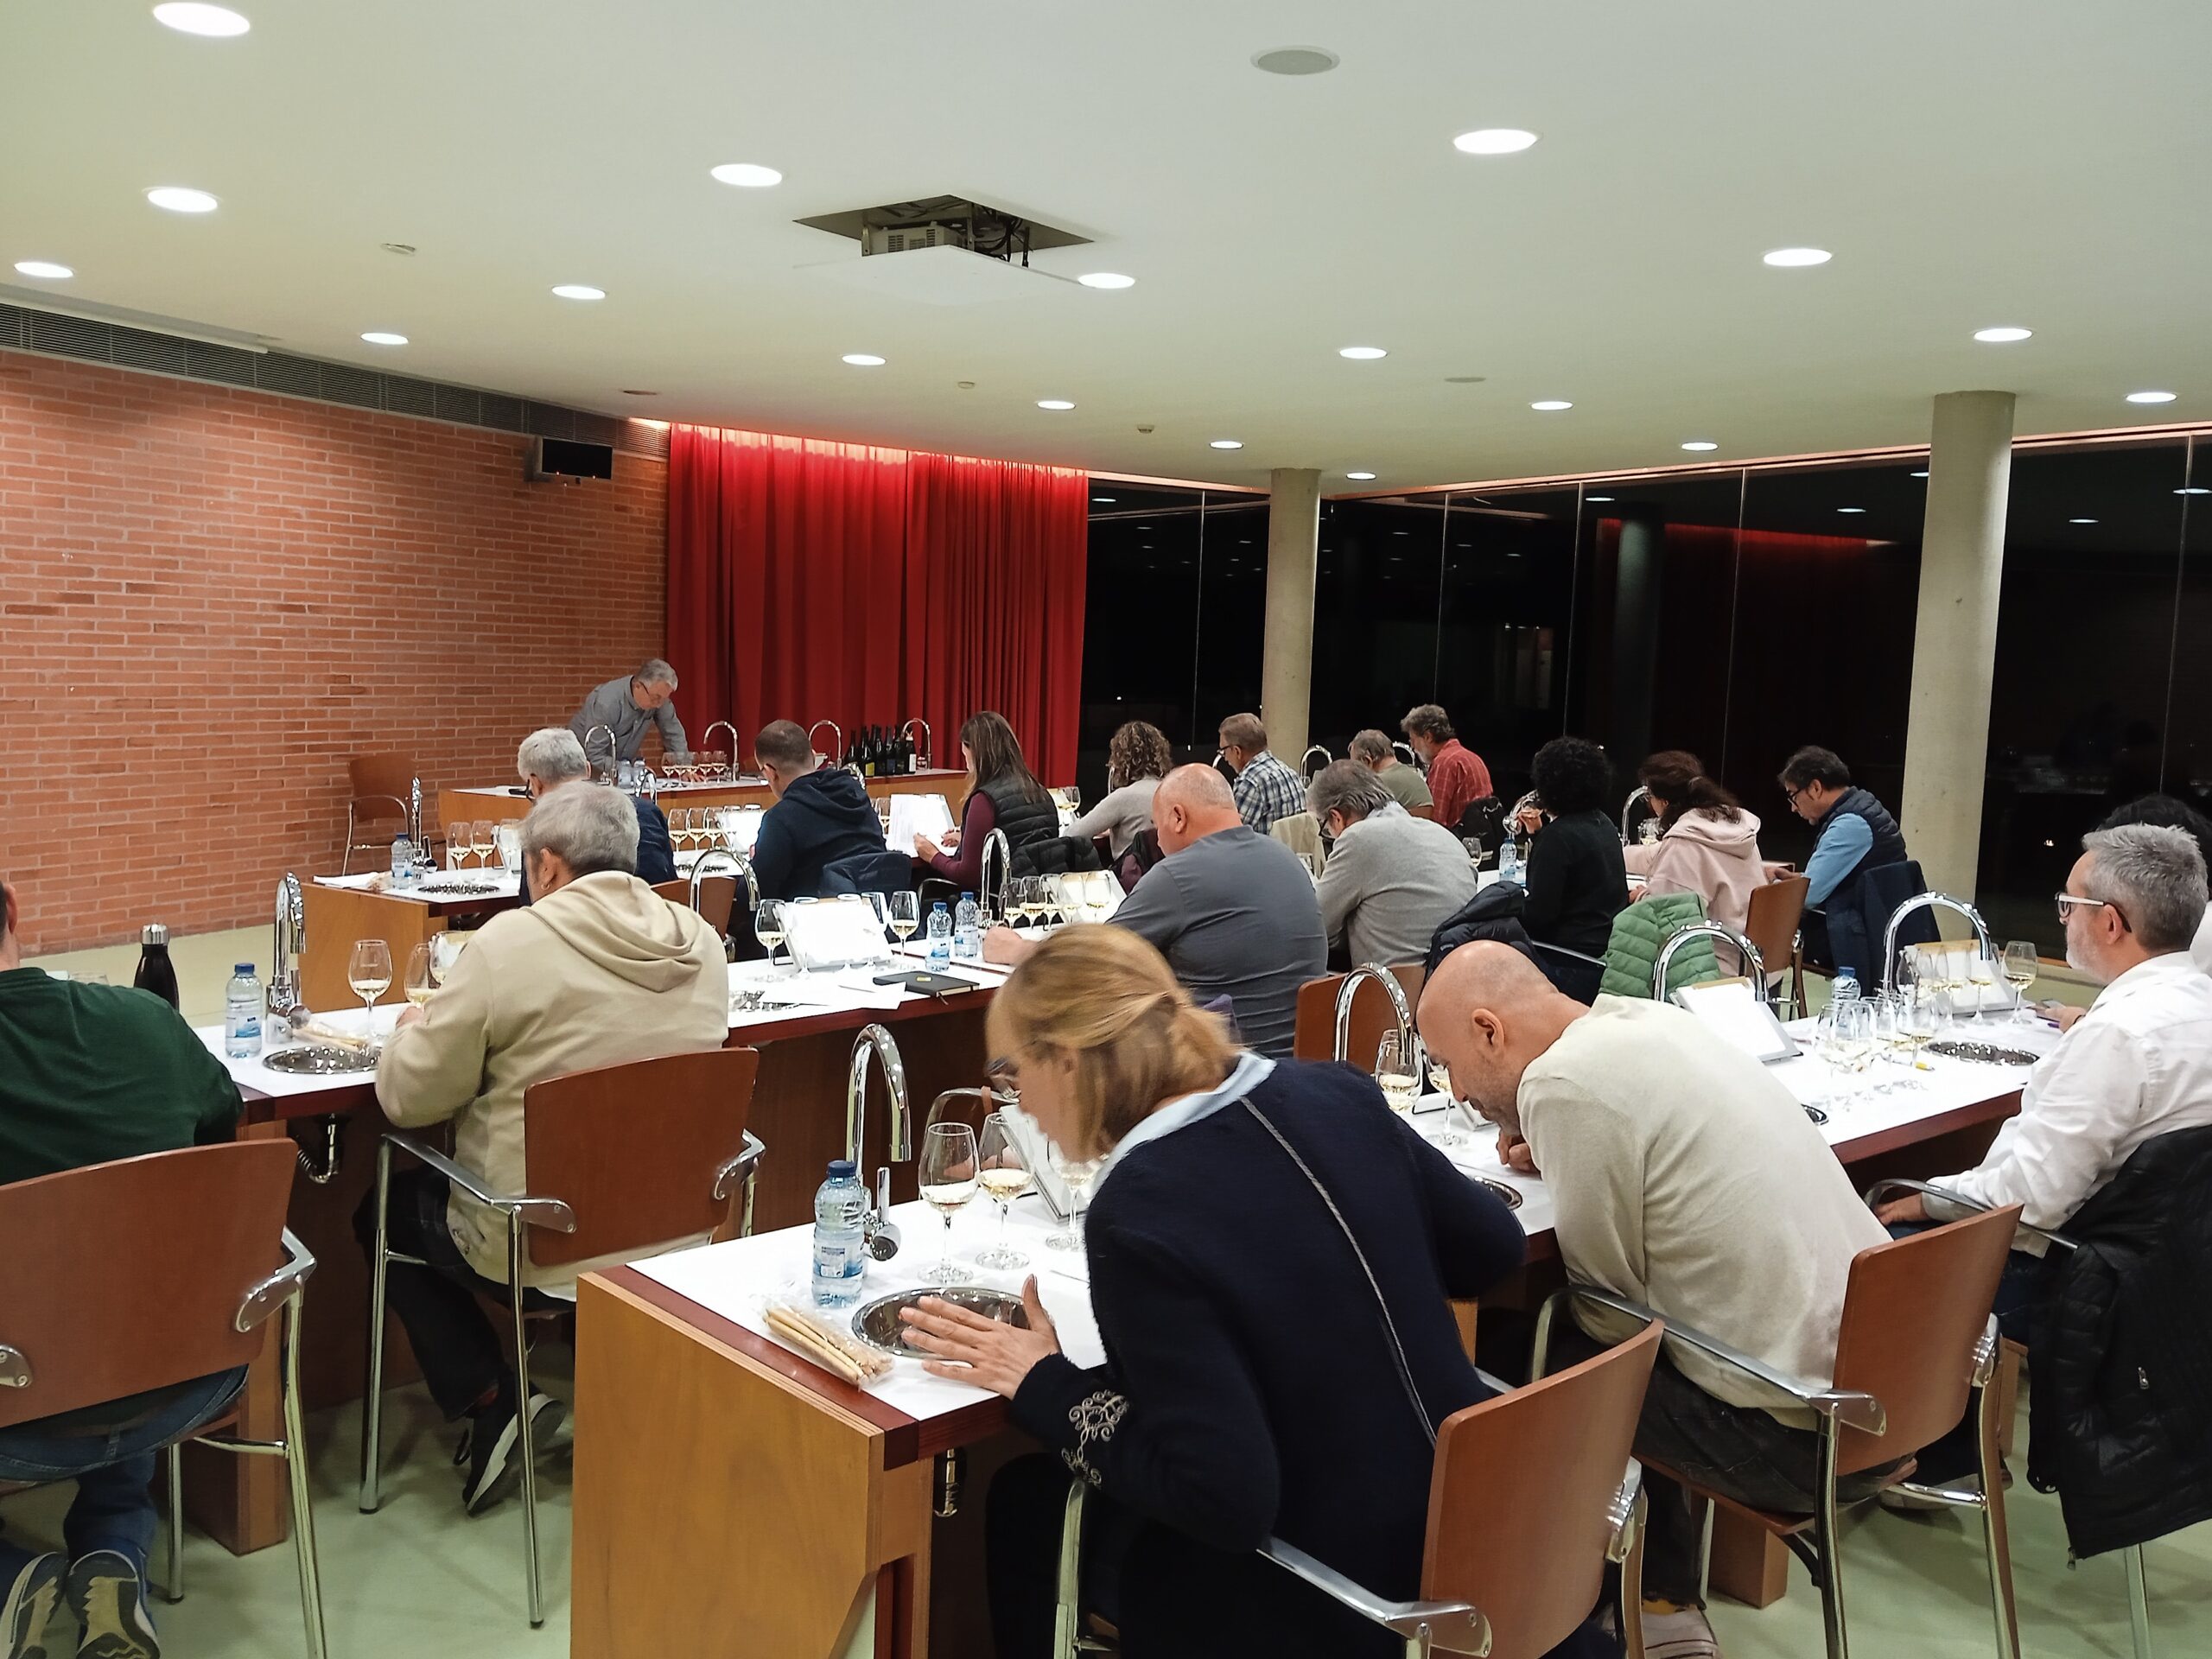 Read more about the article Tercera sessió del taller de tast: Històries dels vins a càrrec de l’enòleg Lluís Ràfols.